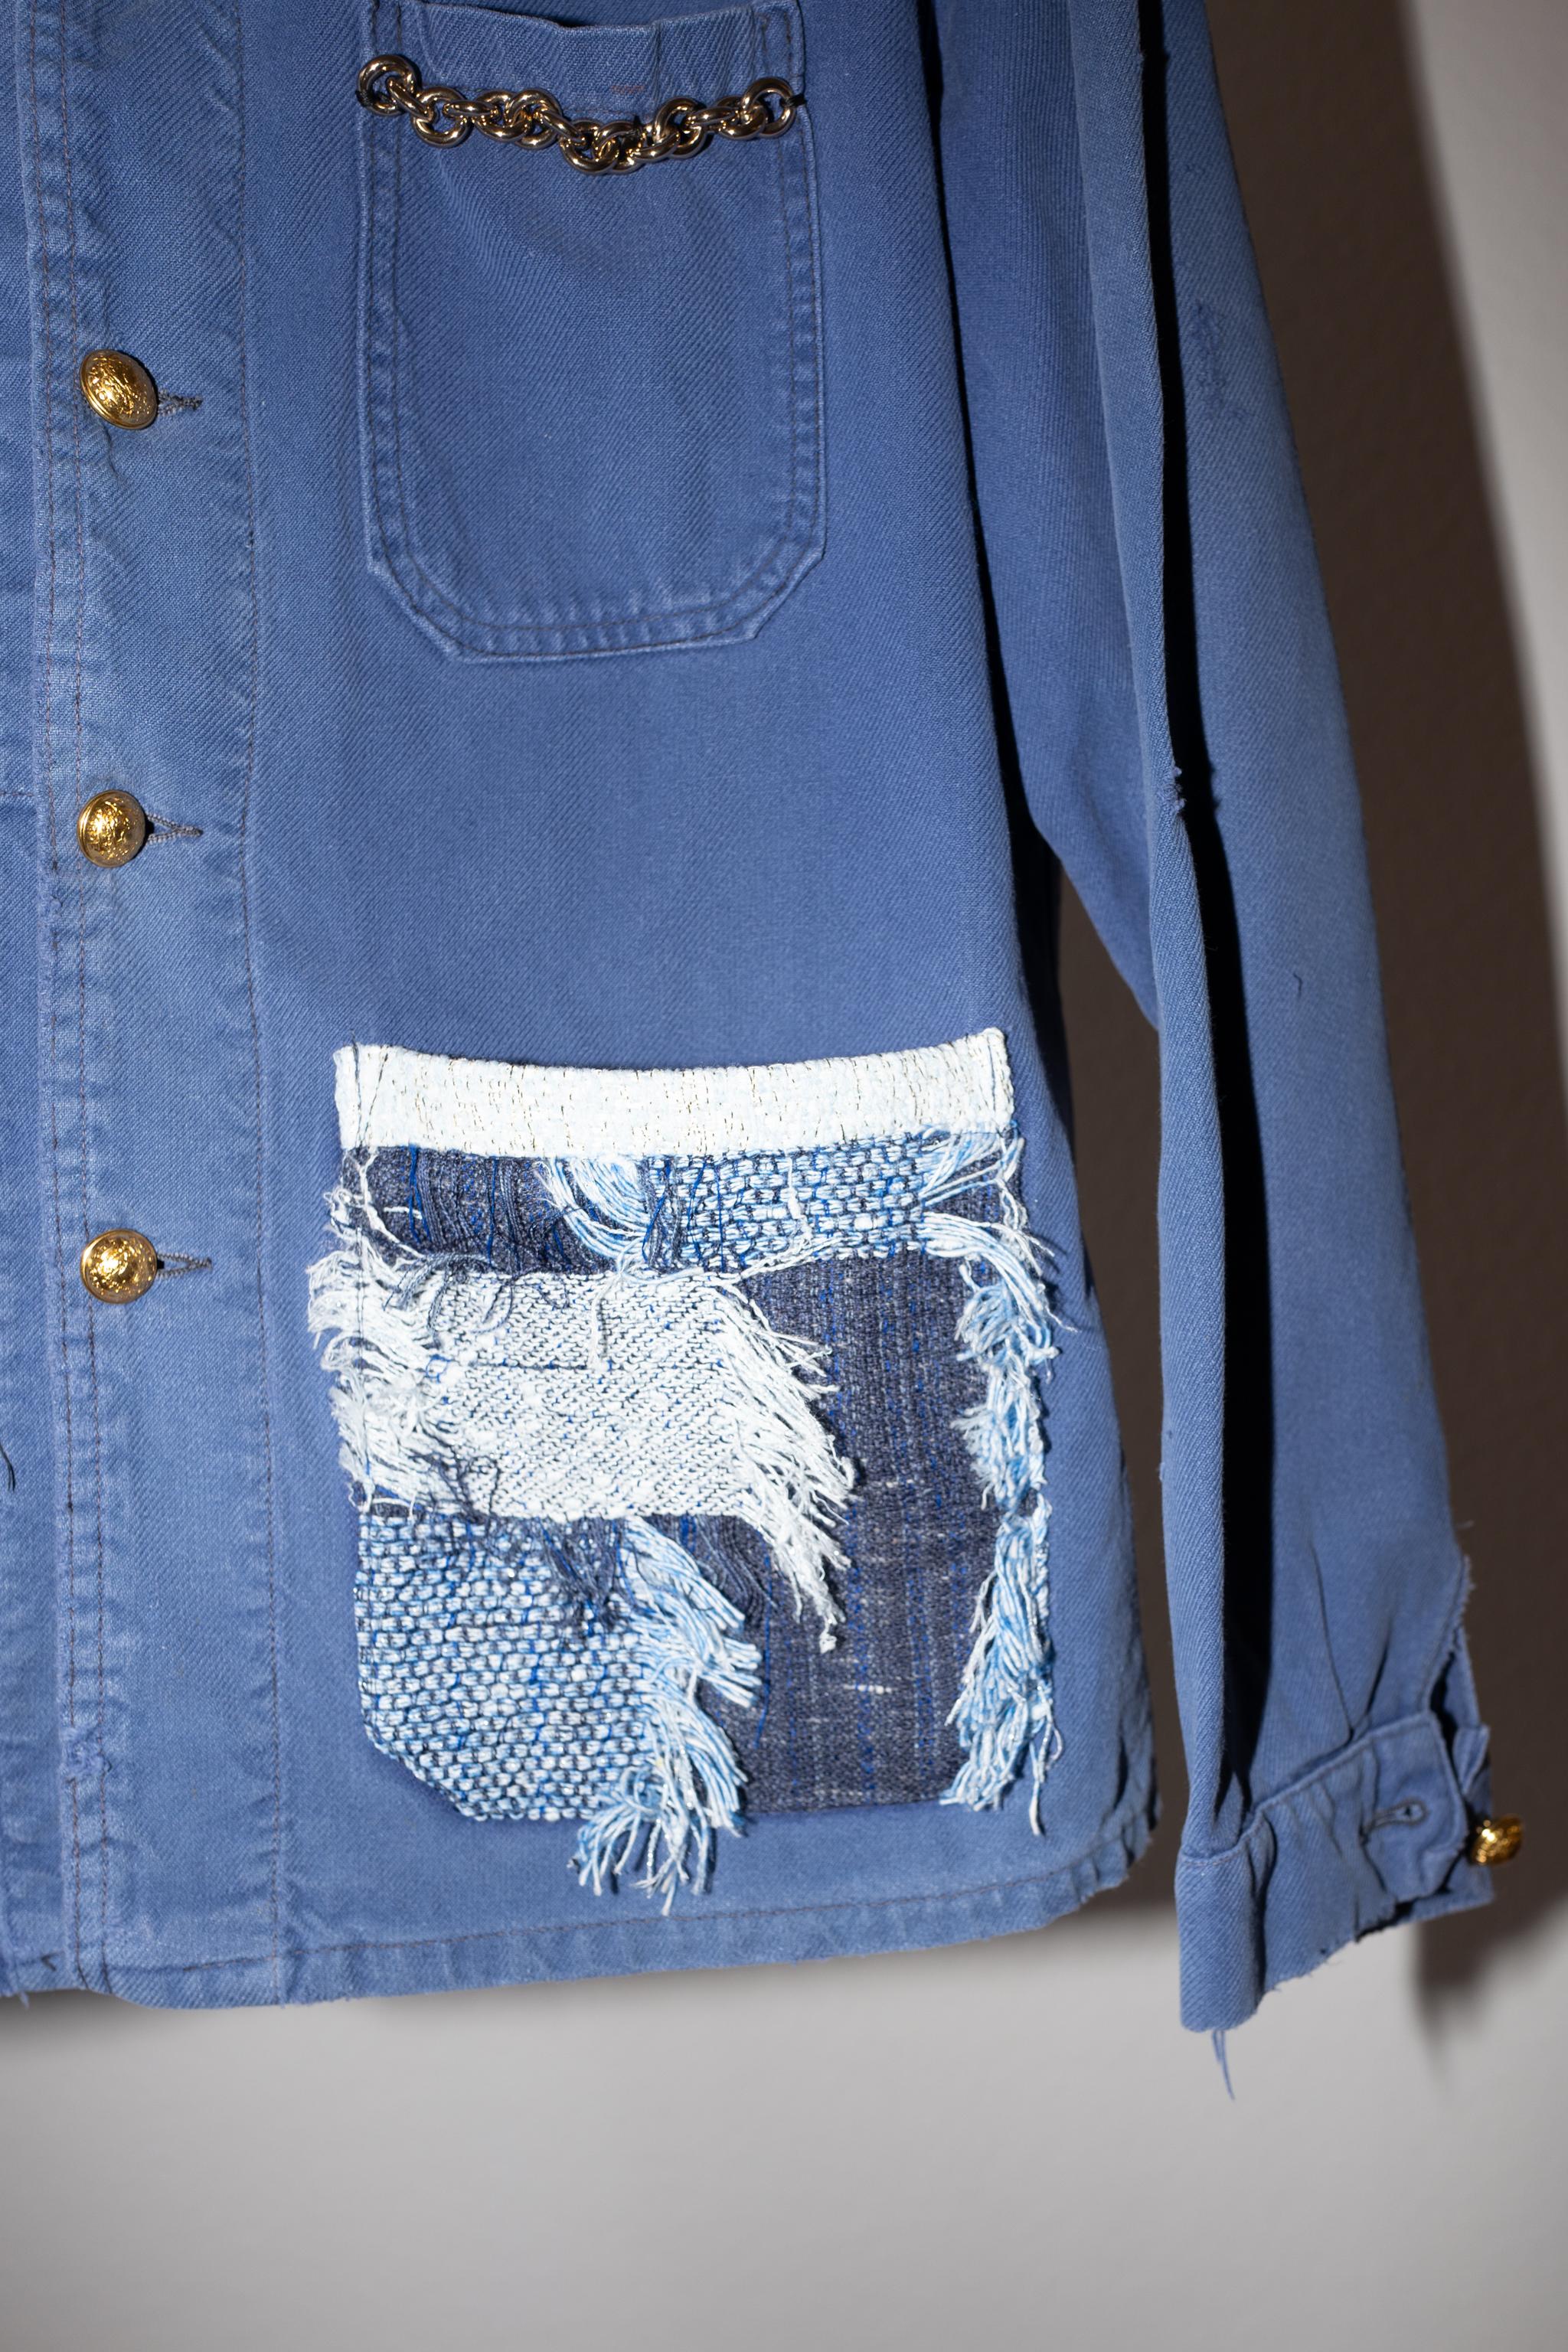 Vintage ein von einer Art Remade Französisch Work Wear Jacke, Französisch Blau Patchwork-Stil Baumwolltaschen, Messing Kette verschönert Tasche, Vintage vergoldet Messingknöpfe aus Paris um die 40 